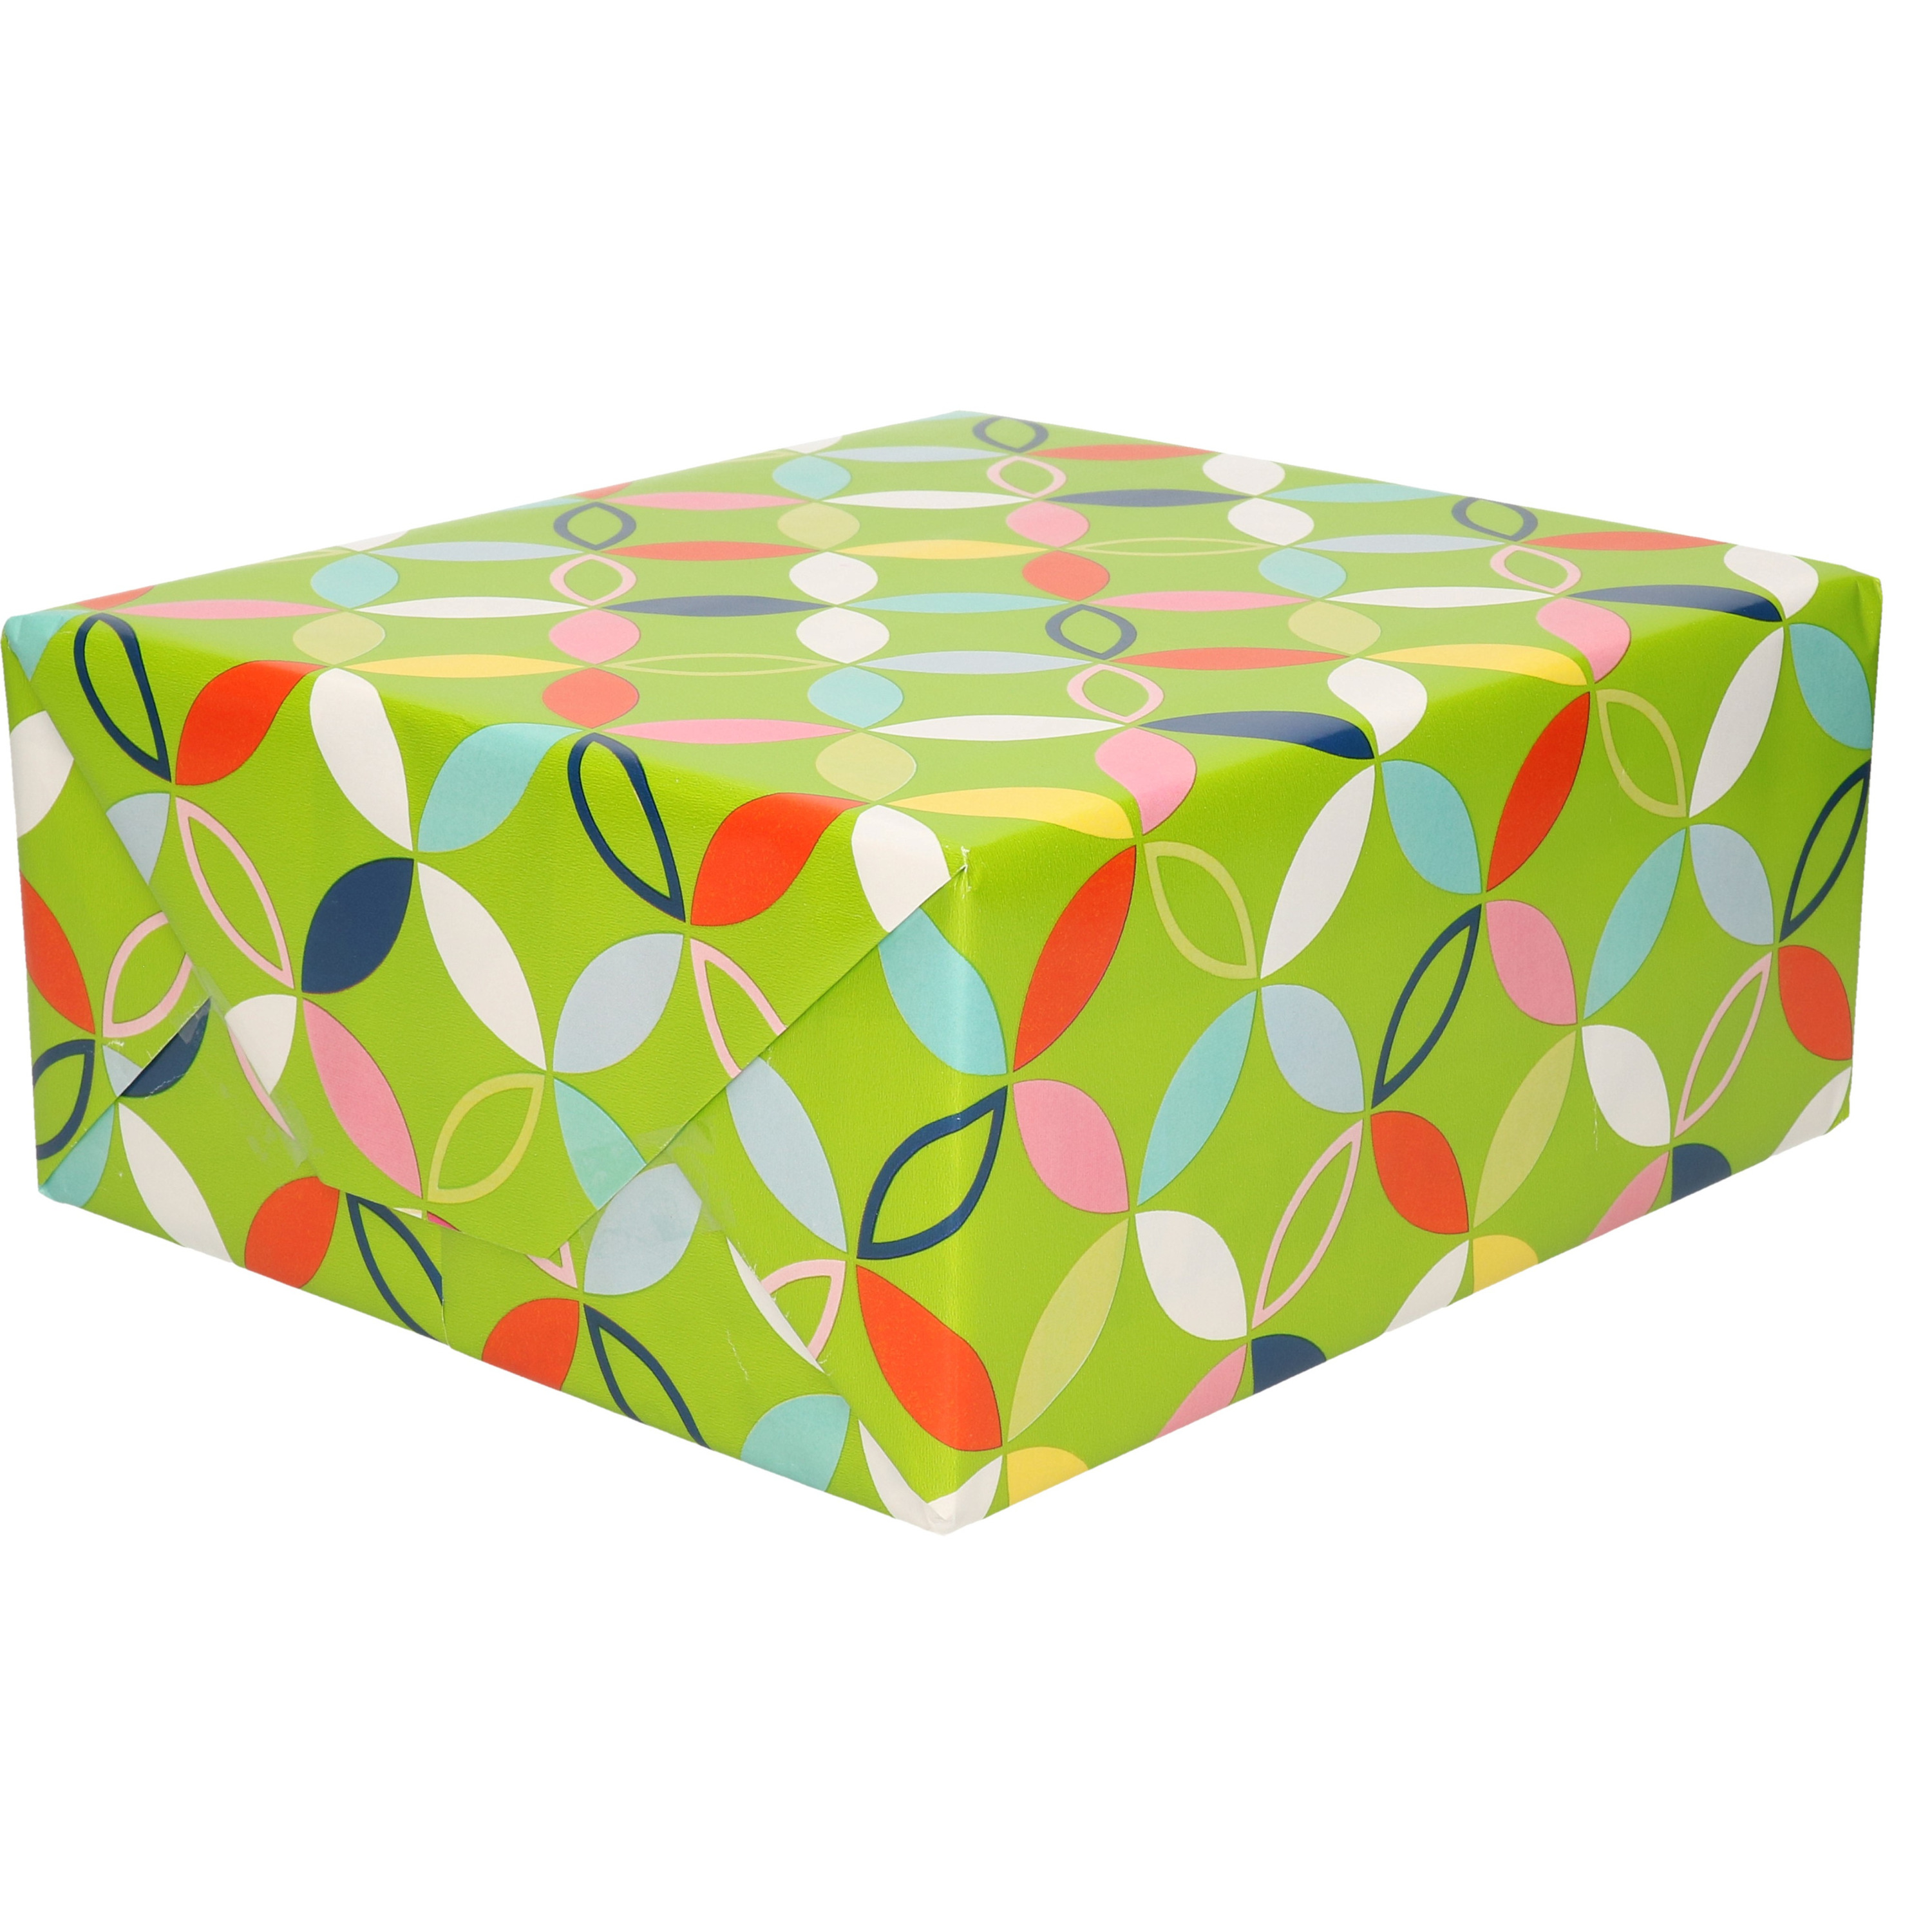 1x Inpakpapier-cadeaupapier groen met bloem figuren motief 200 x 70 cm rol